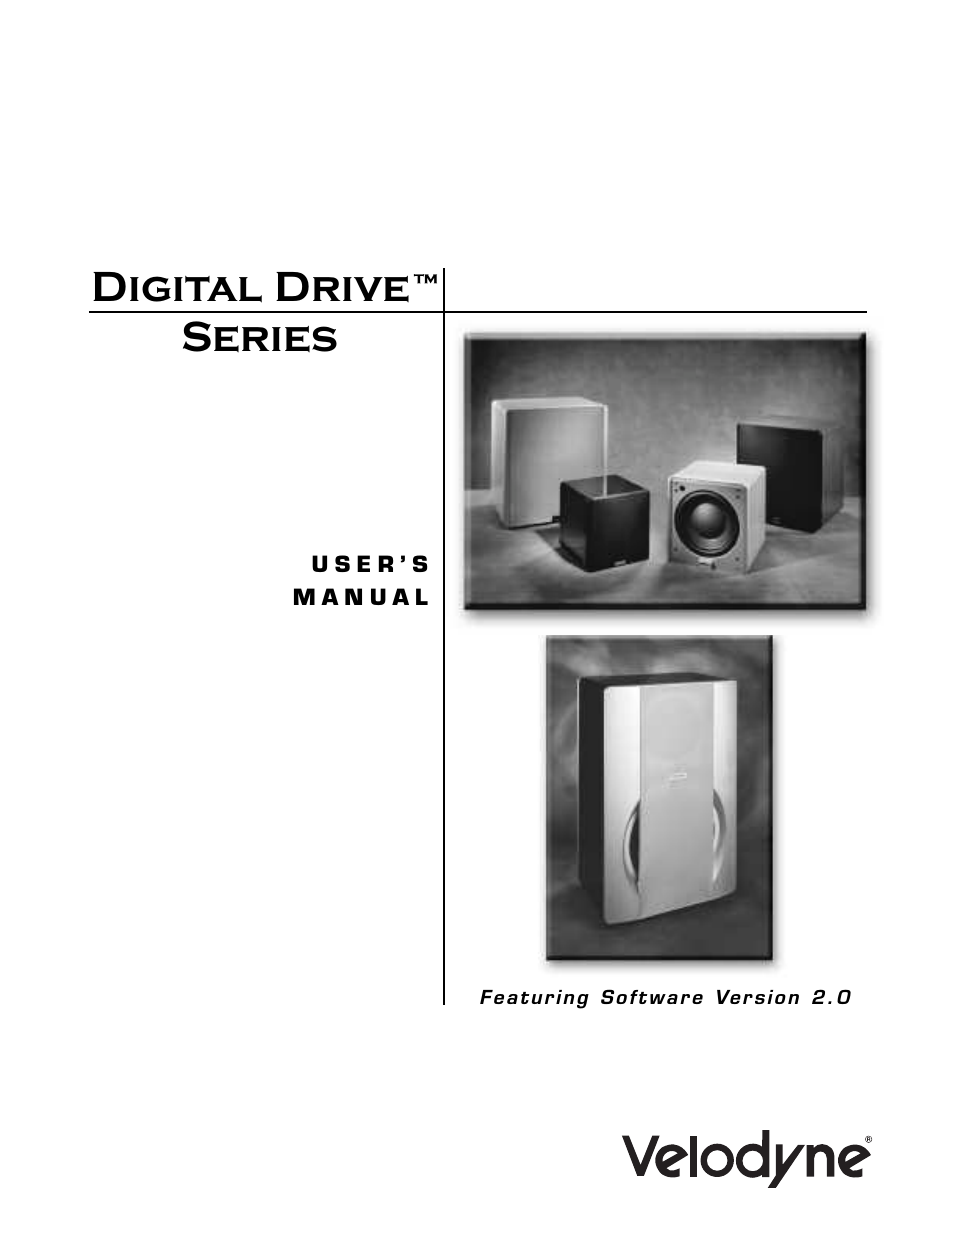 Digital Drive